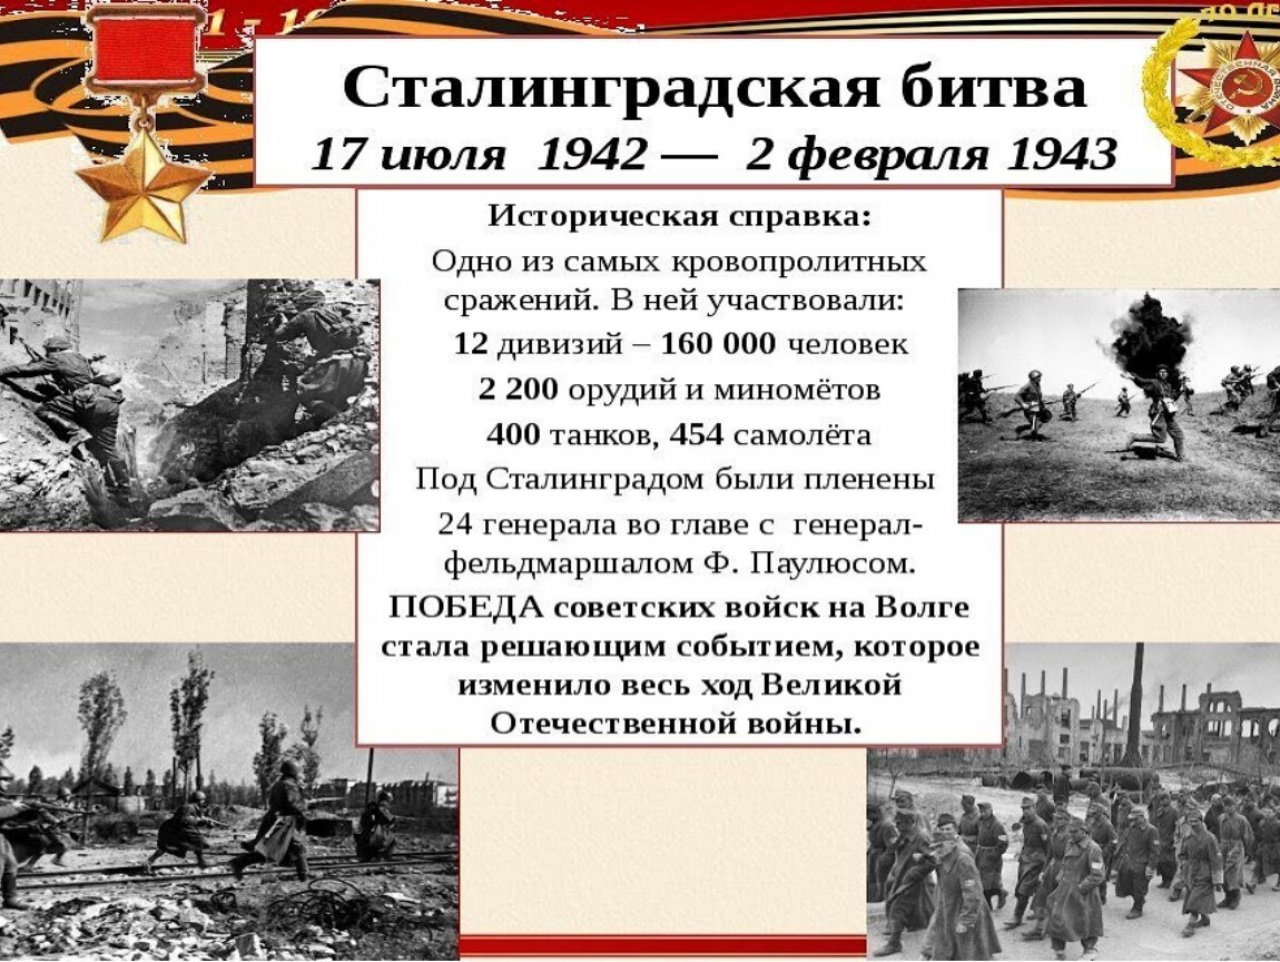 Какие войска участвовали в сталинградской битве. Сталинградской битвы 1942-1943 2 февраля. Сталинградская битва. 17 Июля 1942- 2 февраля 1943 гг. Сталинградская битва (17.07.1942-02.02.1943). Сталинградская битва 1942-1943 годы карта.